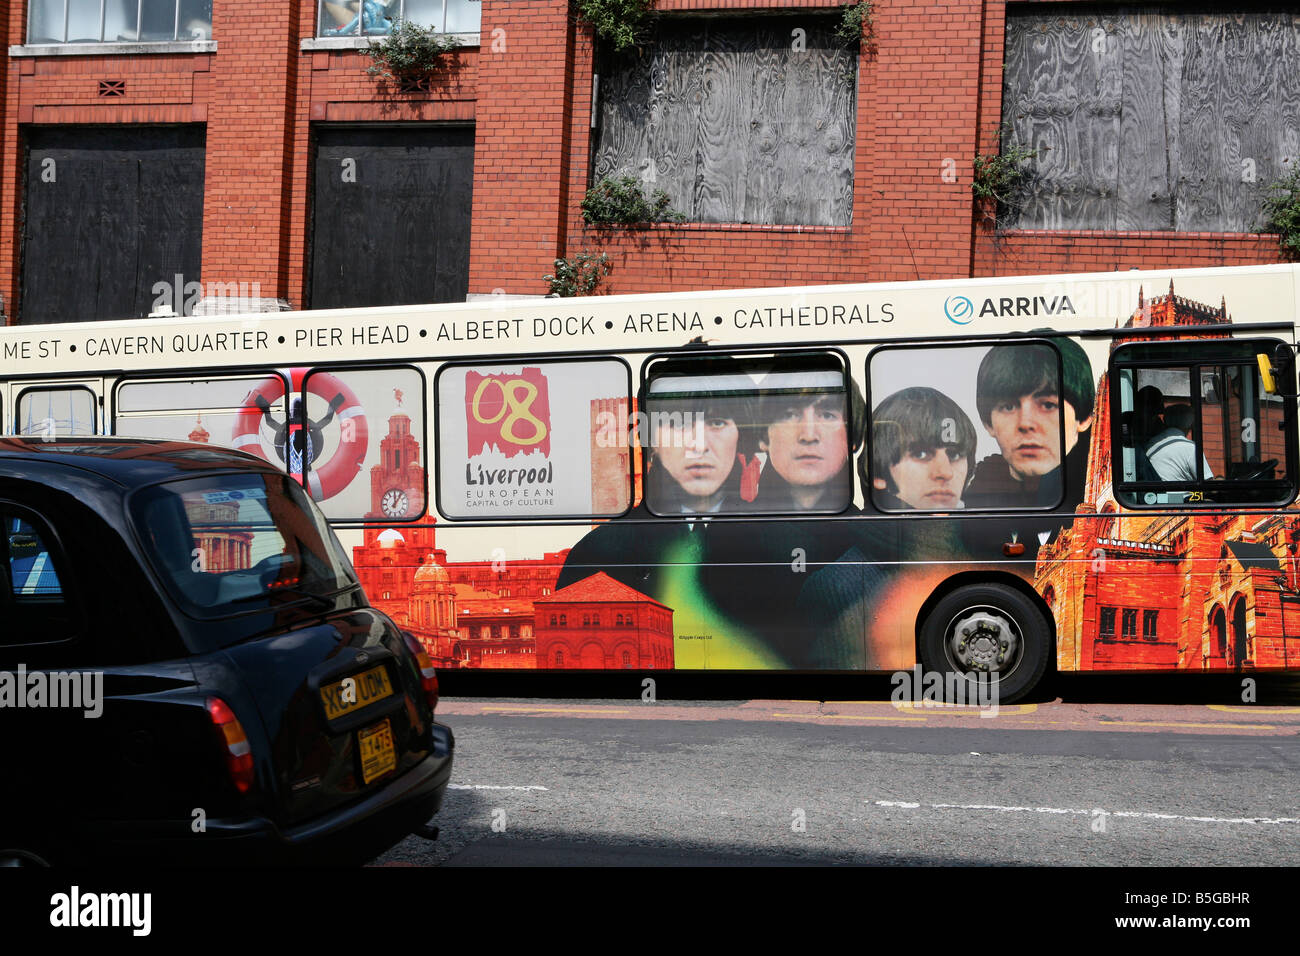 08 Liverpool, ville européenne de la Culture 2008, l'autobus avec les Beatles imprimé sur le côté, Liverpool, Angleterre, Royaume-Uni, Europe Banque D'Images